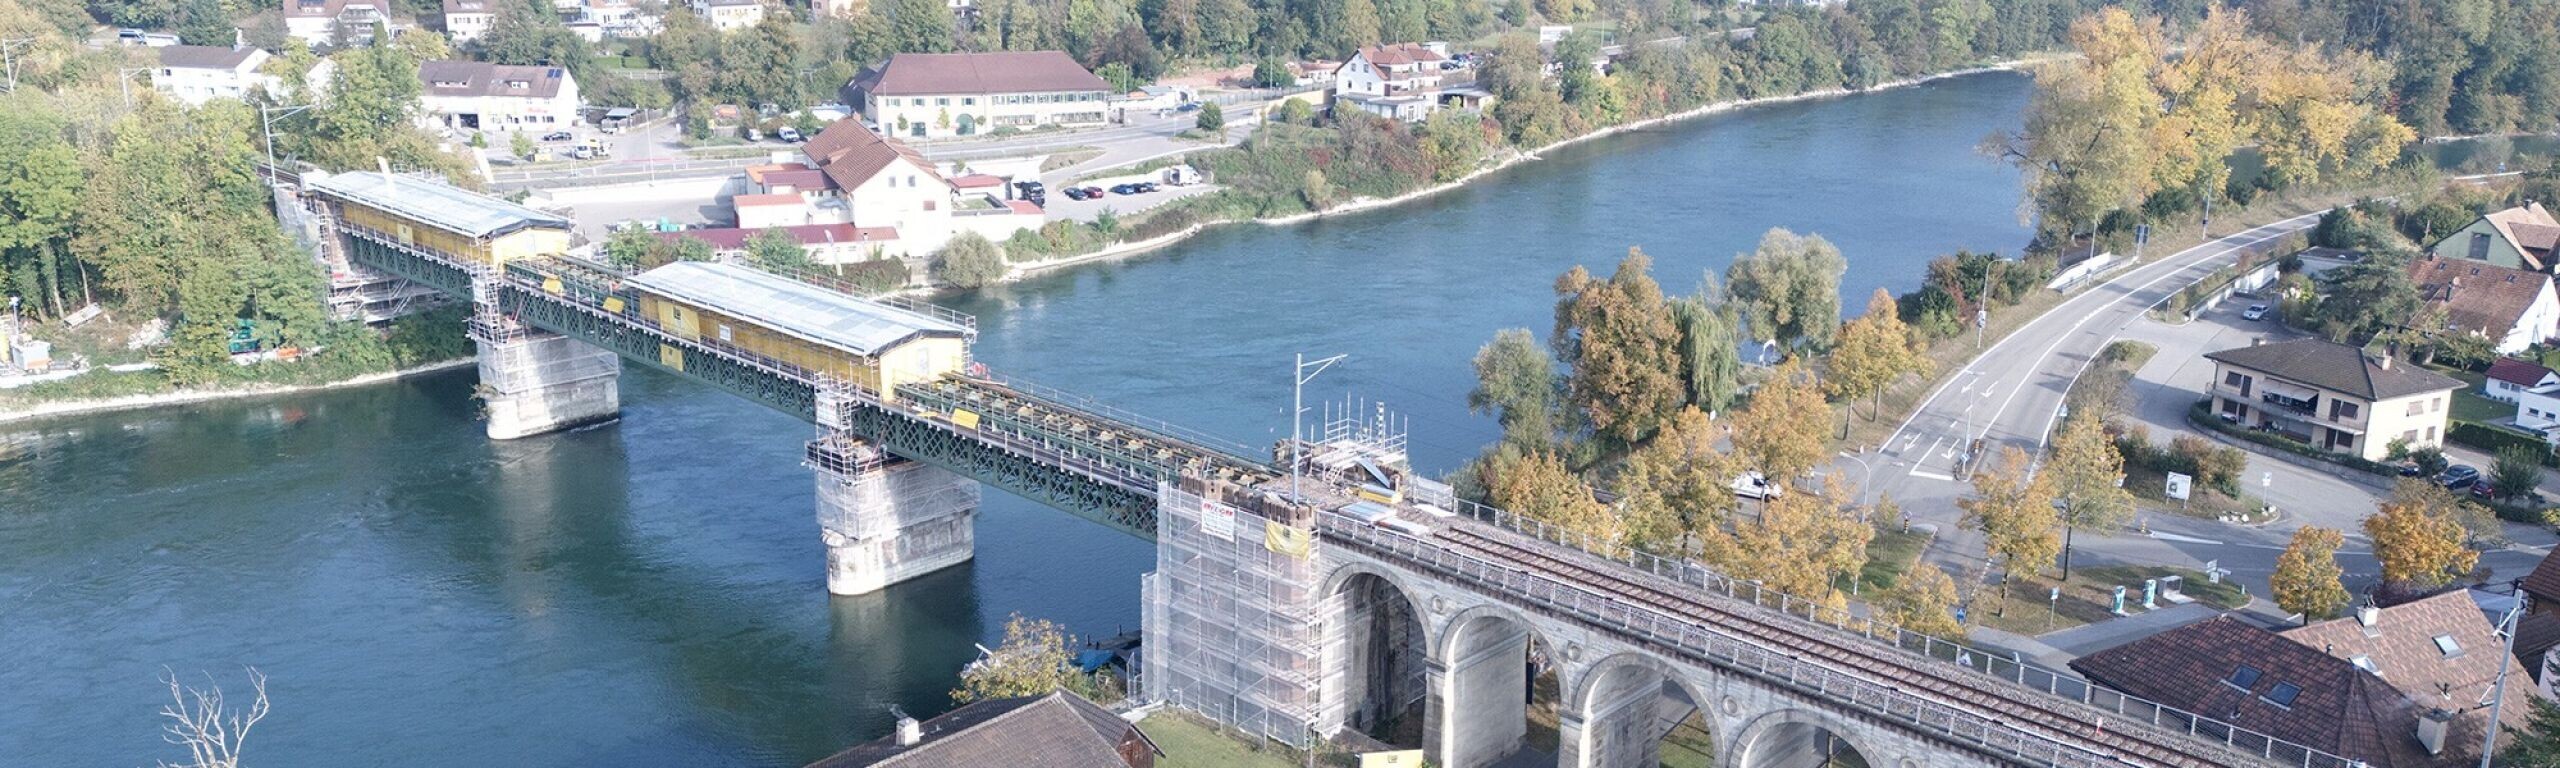 Rheinbrücke Koblenz: Sanierungsarbeiten aufwändiger als erwartet